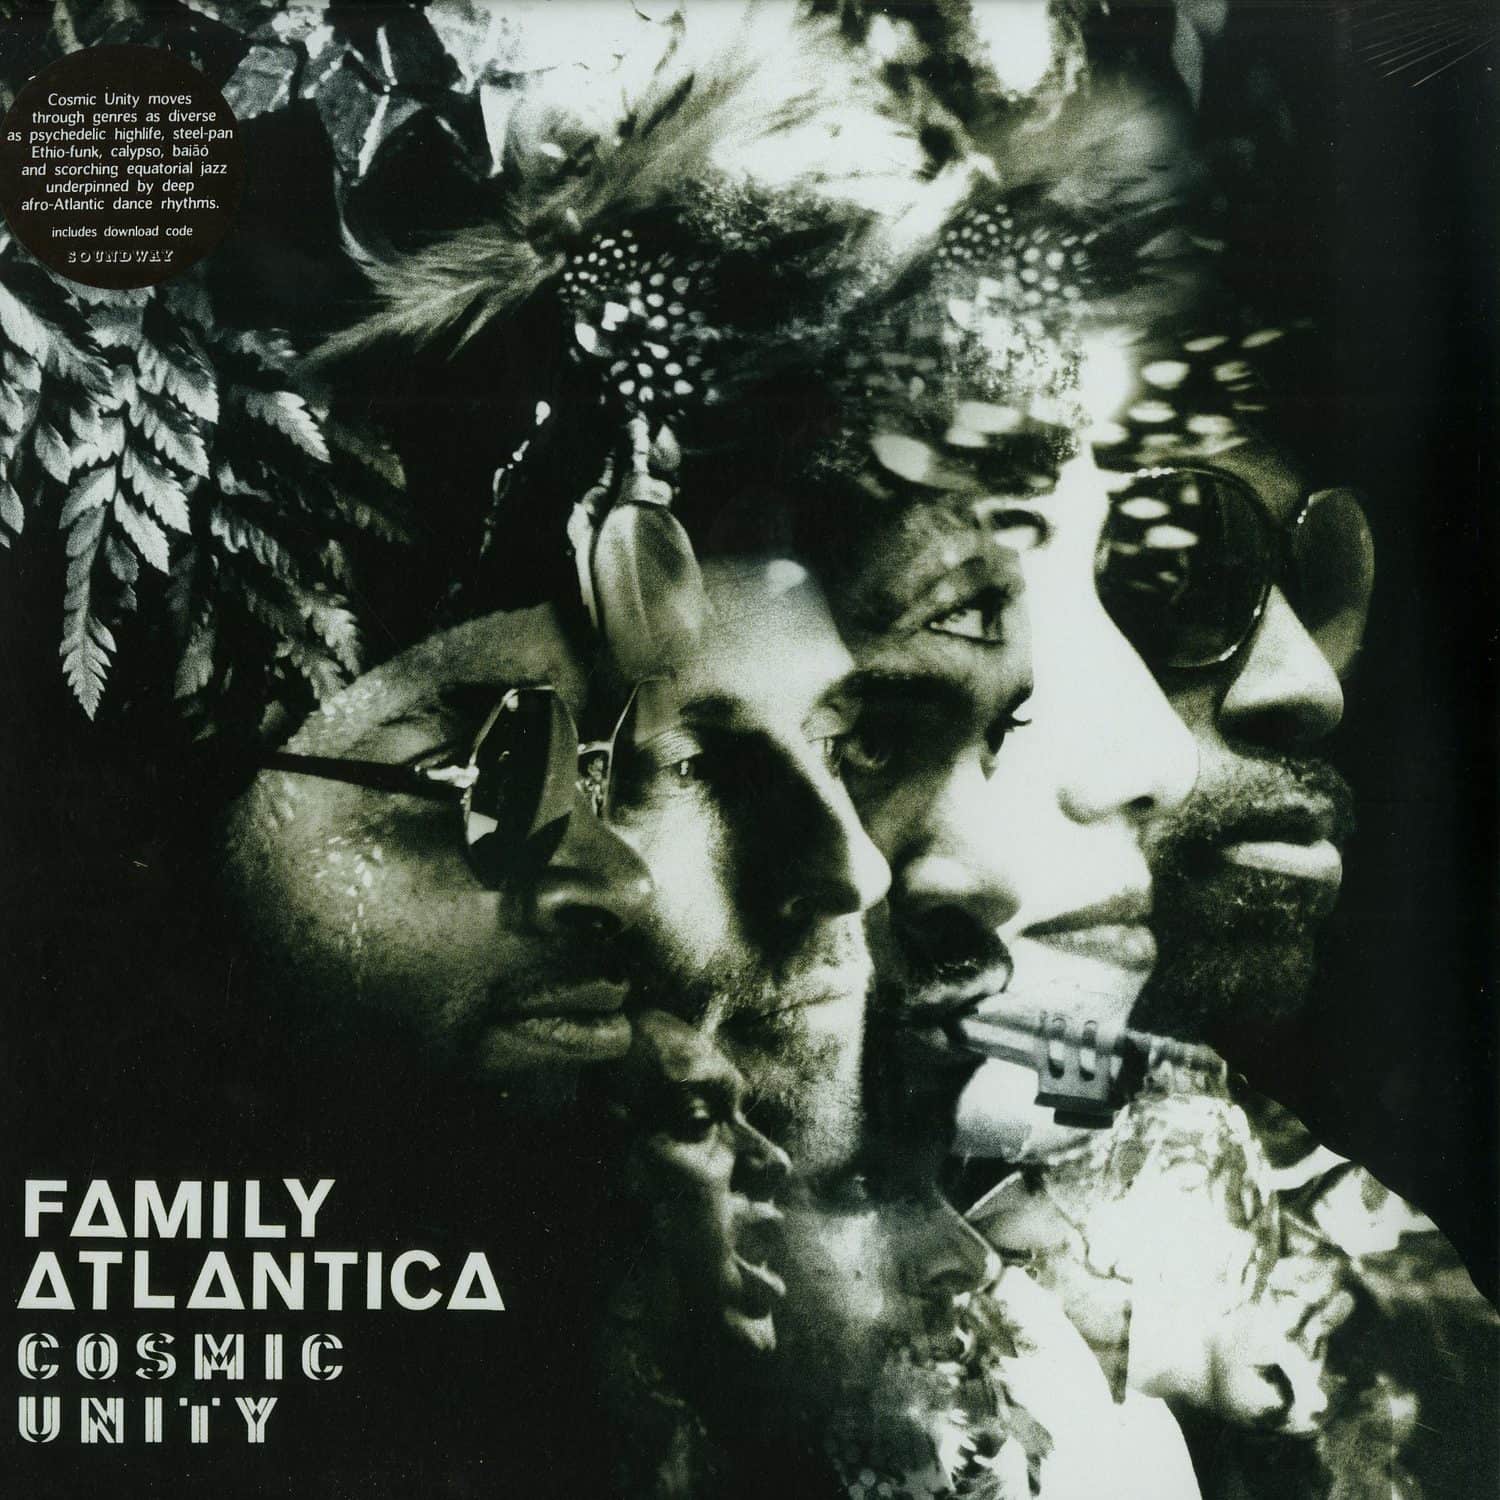 Family Atlantica - COSMIC UNITY 